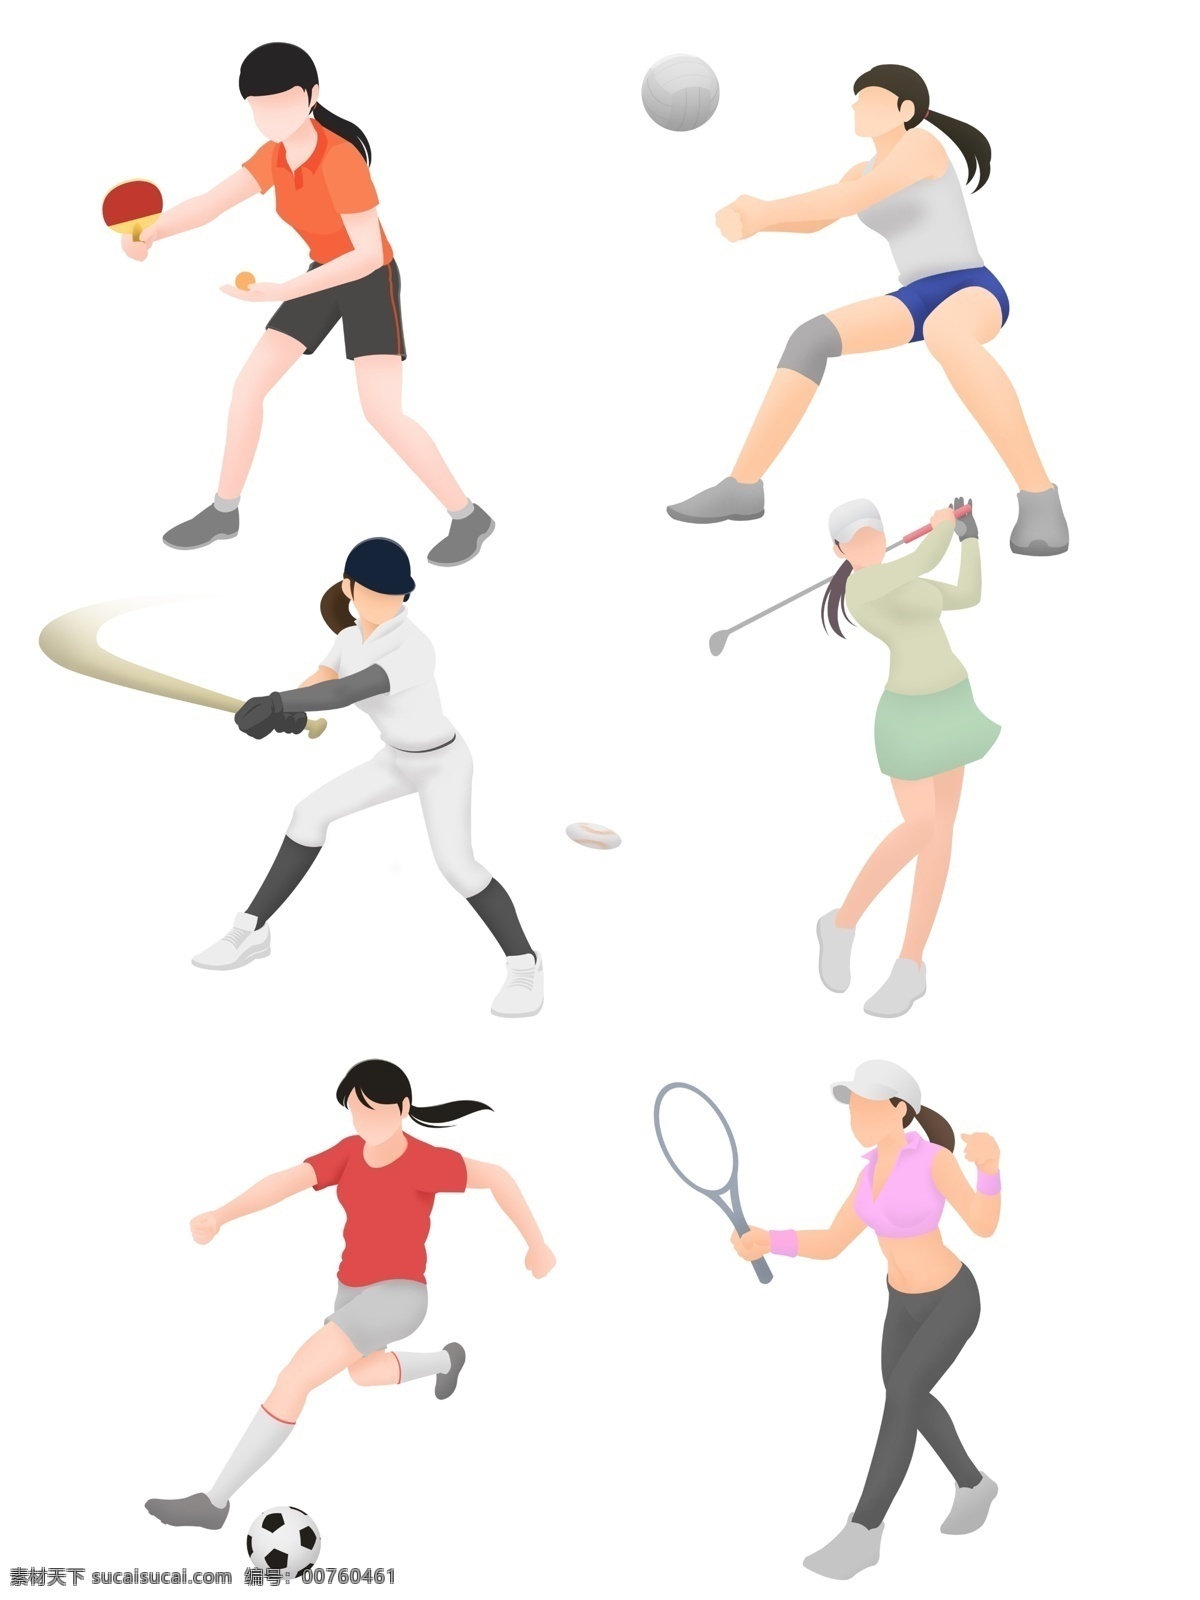 各种 运动 女孩 套 图 矢量 扁平化 羽毛球 兵乓球 足球 网球 高尔夫 棒球 排球 元素 商用 运动装 体育 健身 健康 活力